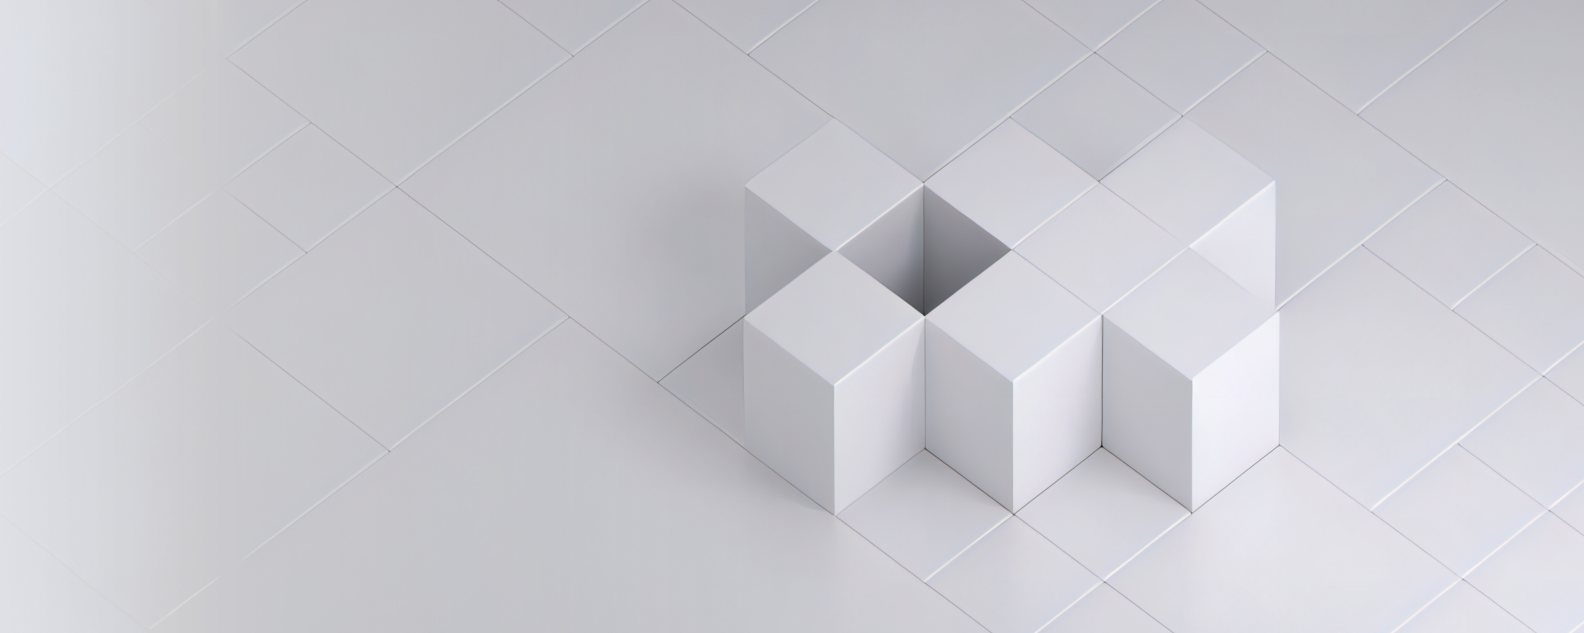 흰색 사각형 격자에 배열되어 패턴을 이룬 일곱 개의 흰색 큐브의 사실적인 이미지 또는 사진